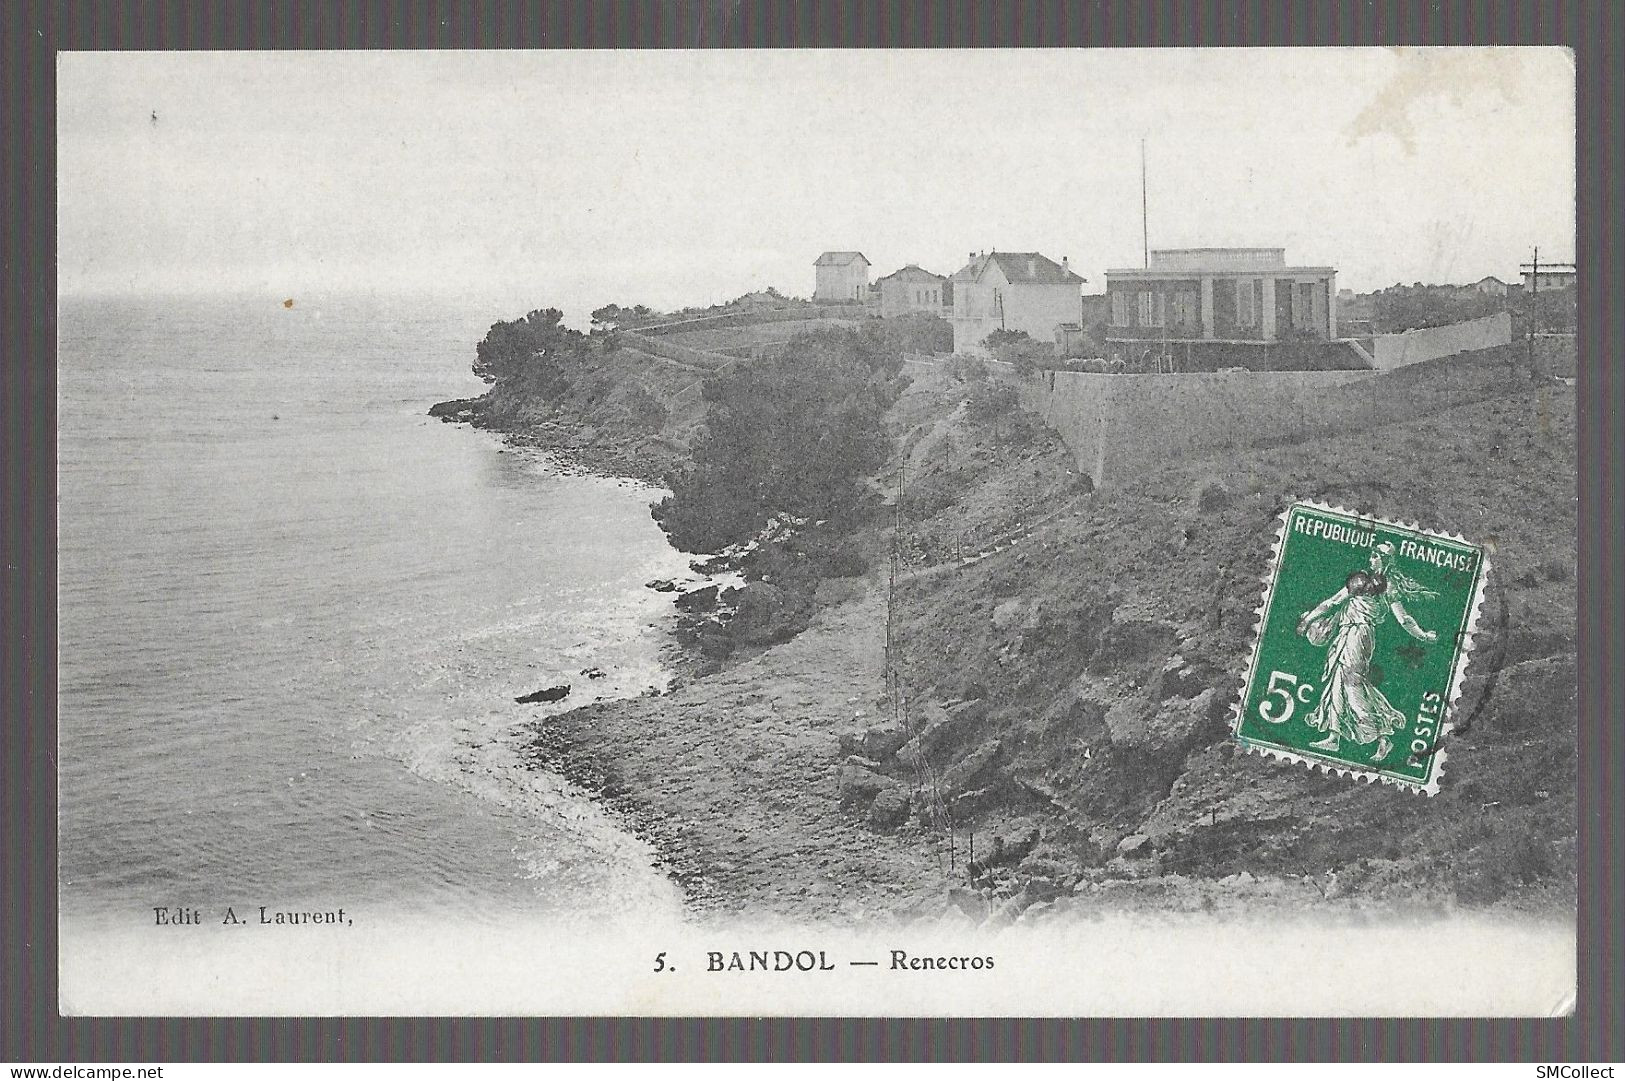 Bandol, Renecros (13601) - Bandol